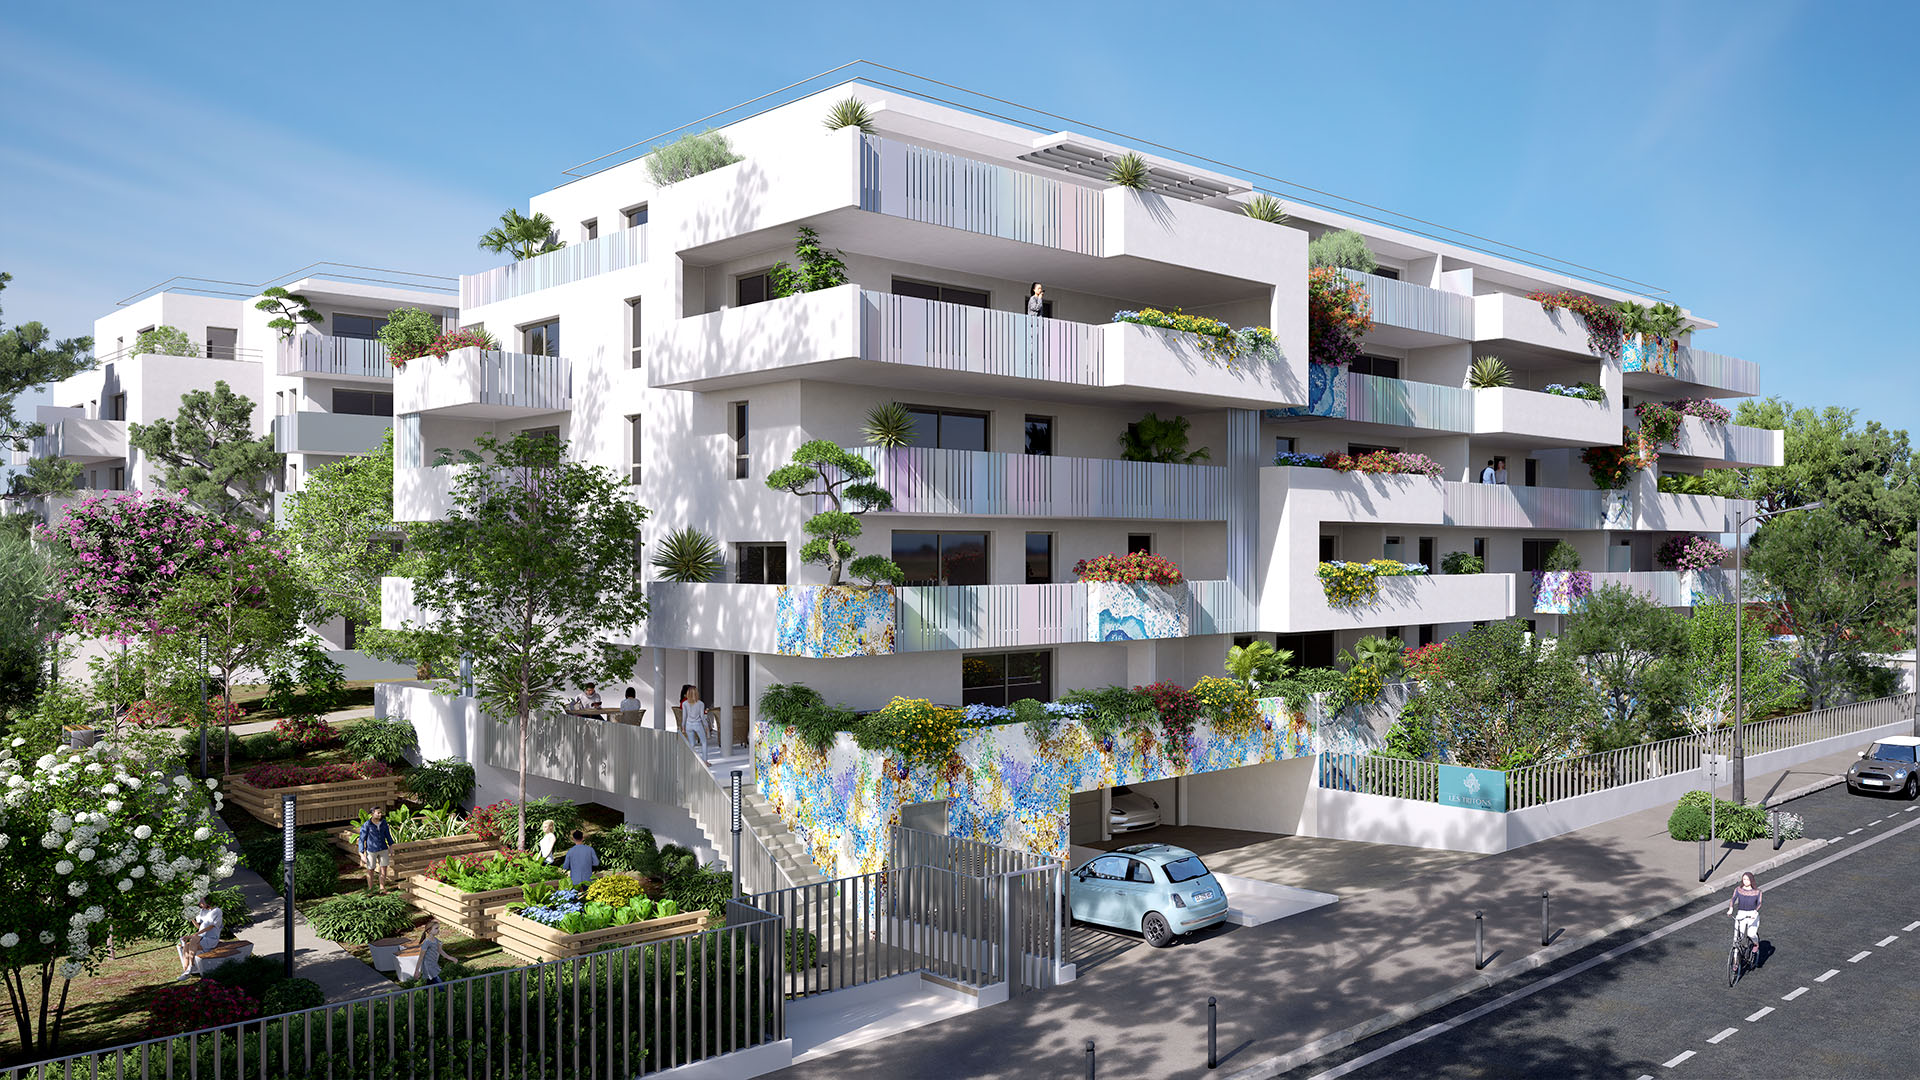 Programme immobilier neuf Sète emplacement d'exception à 150 m de la plage